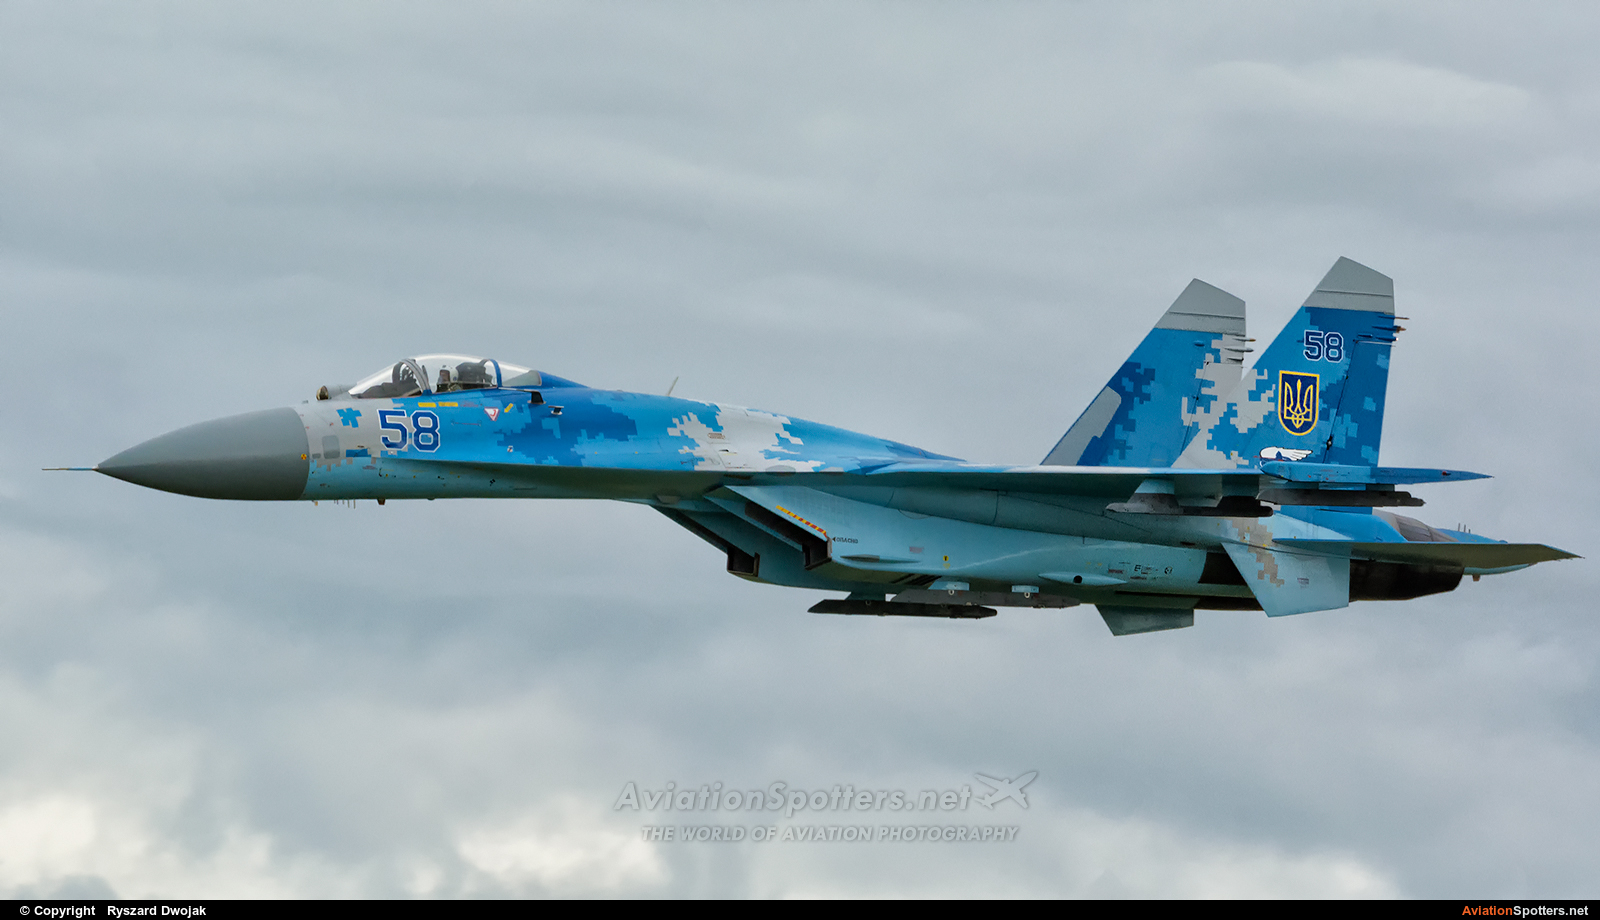 Ukraine - Air Force  -  Su-27  (58) By Ryszard Dwojak (ryś)